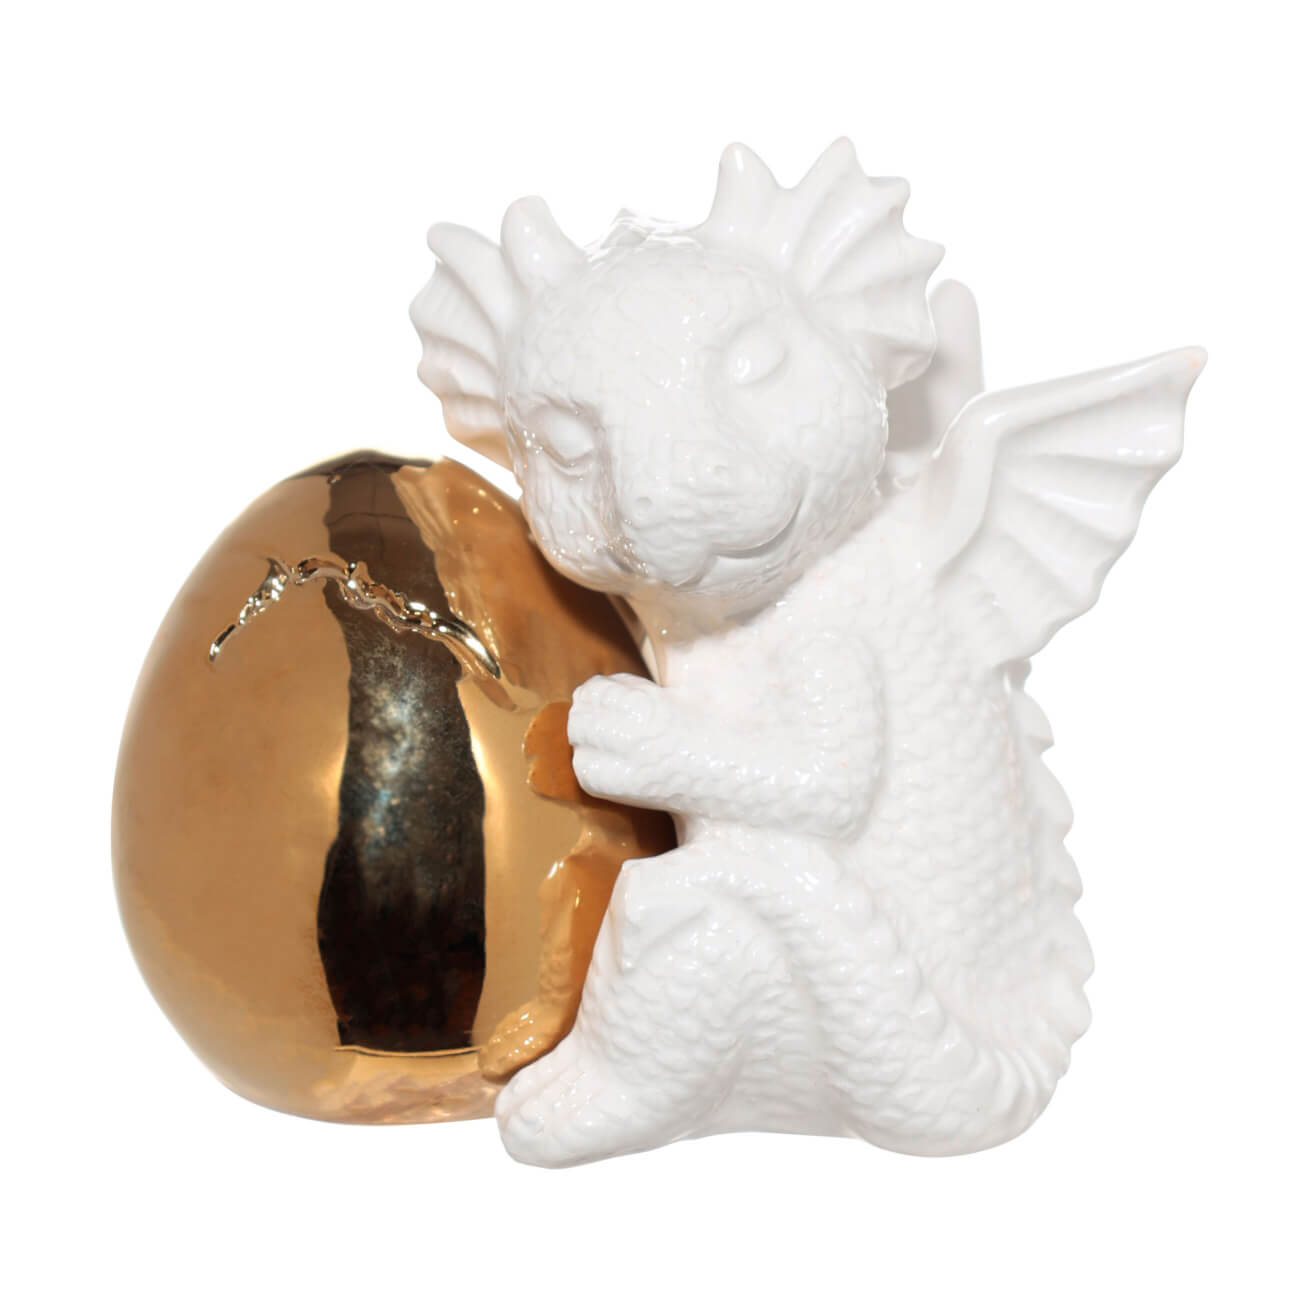 Набор для соли и перца, 9 см, с магнитом, керамика, золотистый/белый, Дракон и яйцо, Dragon cute набор для творчества 1 пр гипс роспись яйцо с кроликом creative